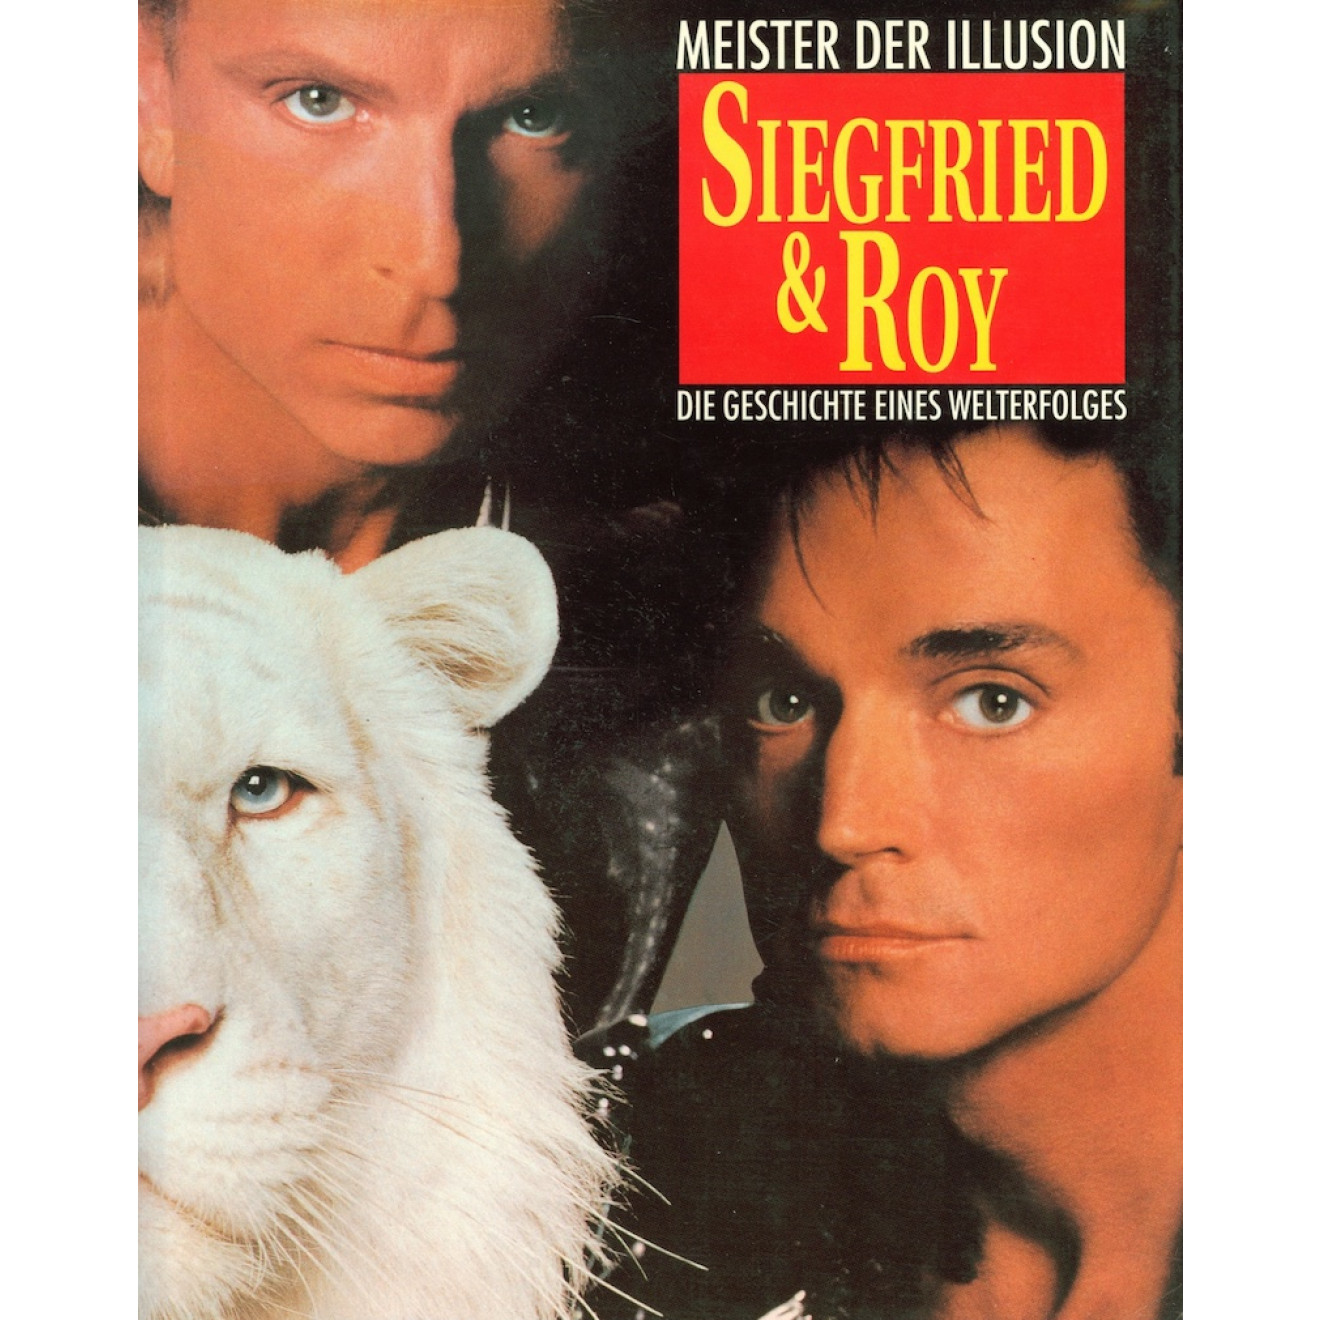 Siegfried und Roy: Meister der Illusion (Bertelsmann)